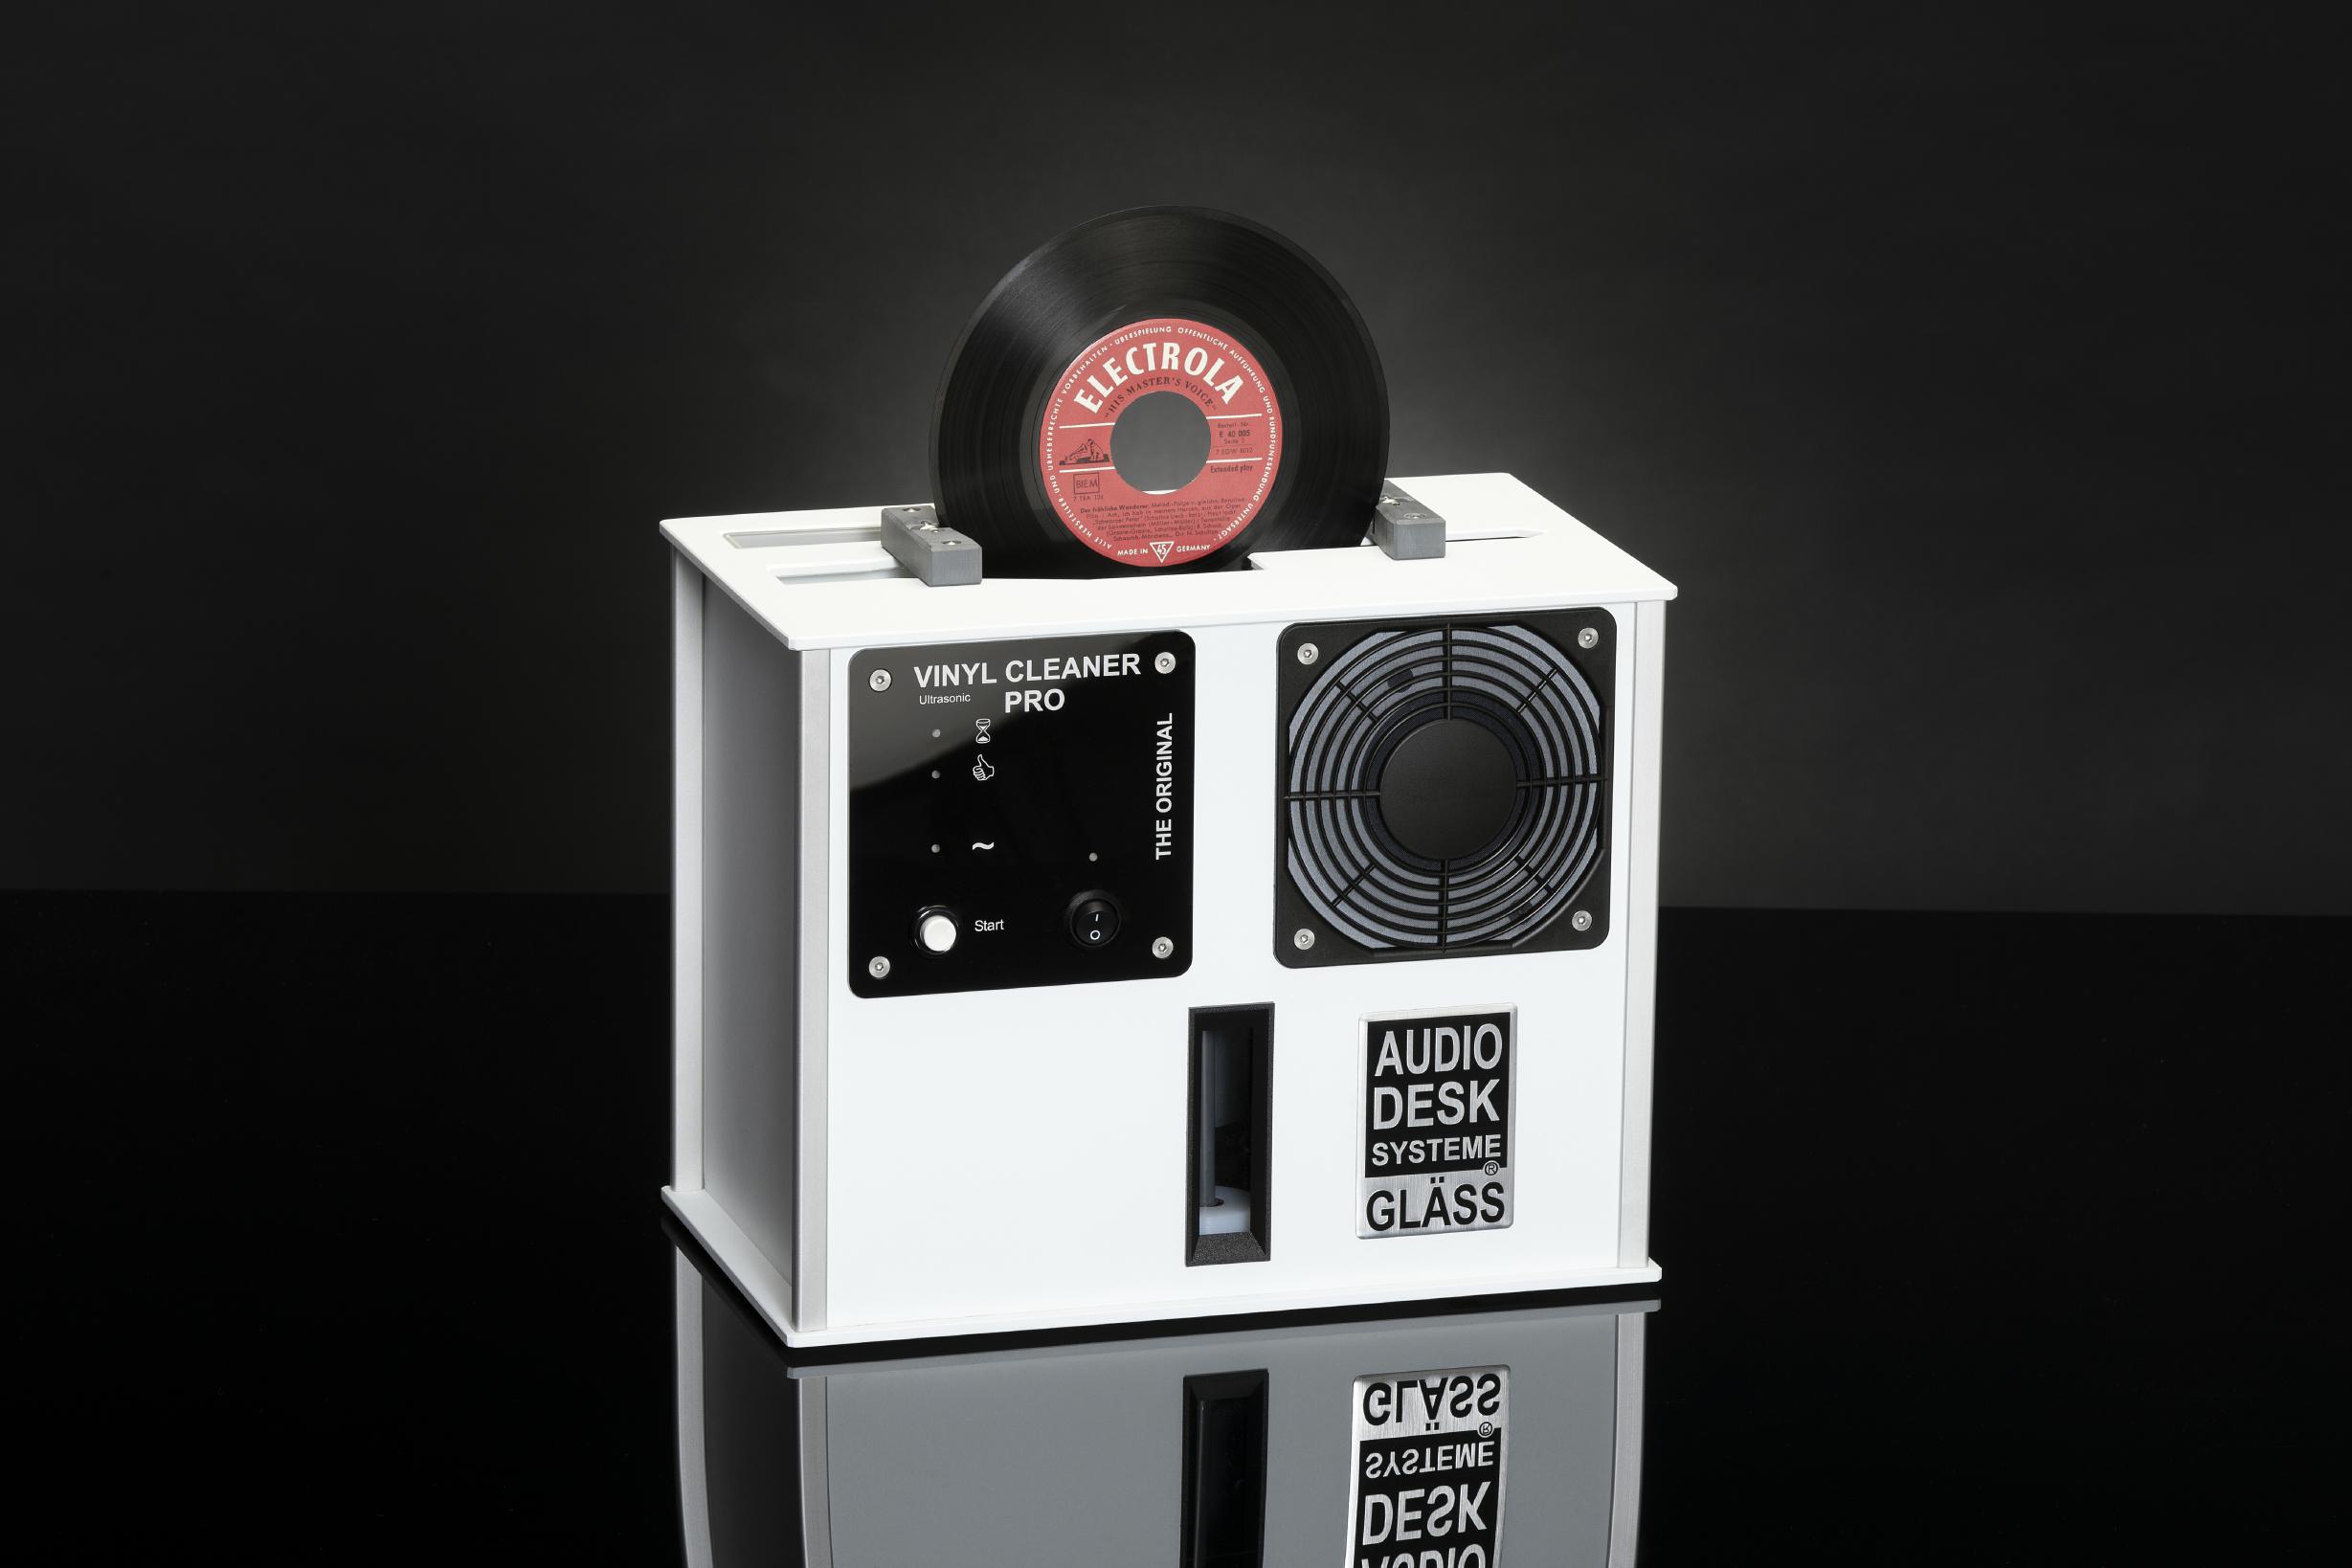 Gläss Audiodesk Vinyl Cleaner Pro X - Weiss